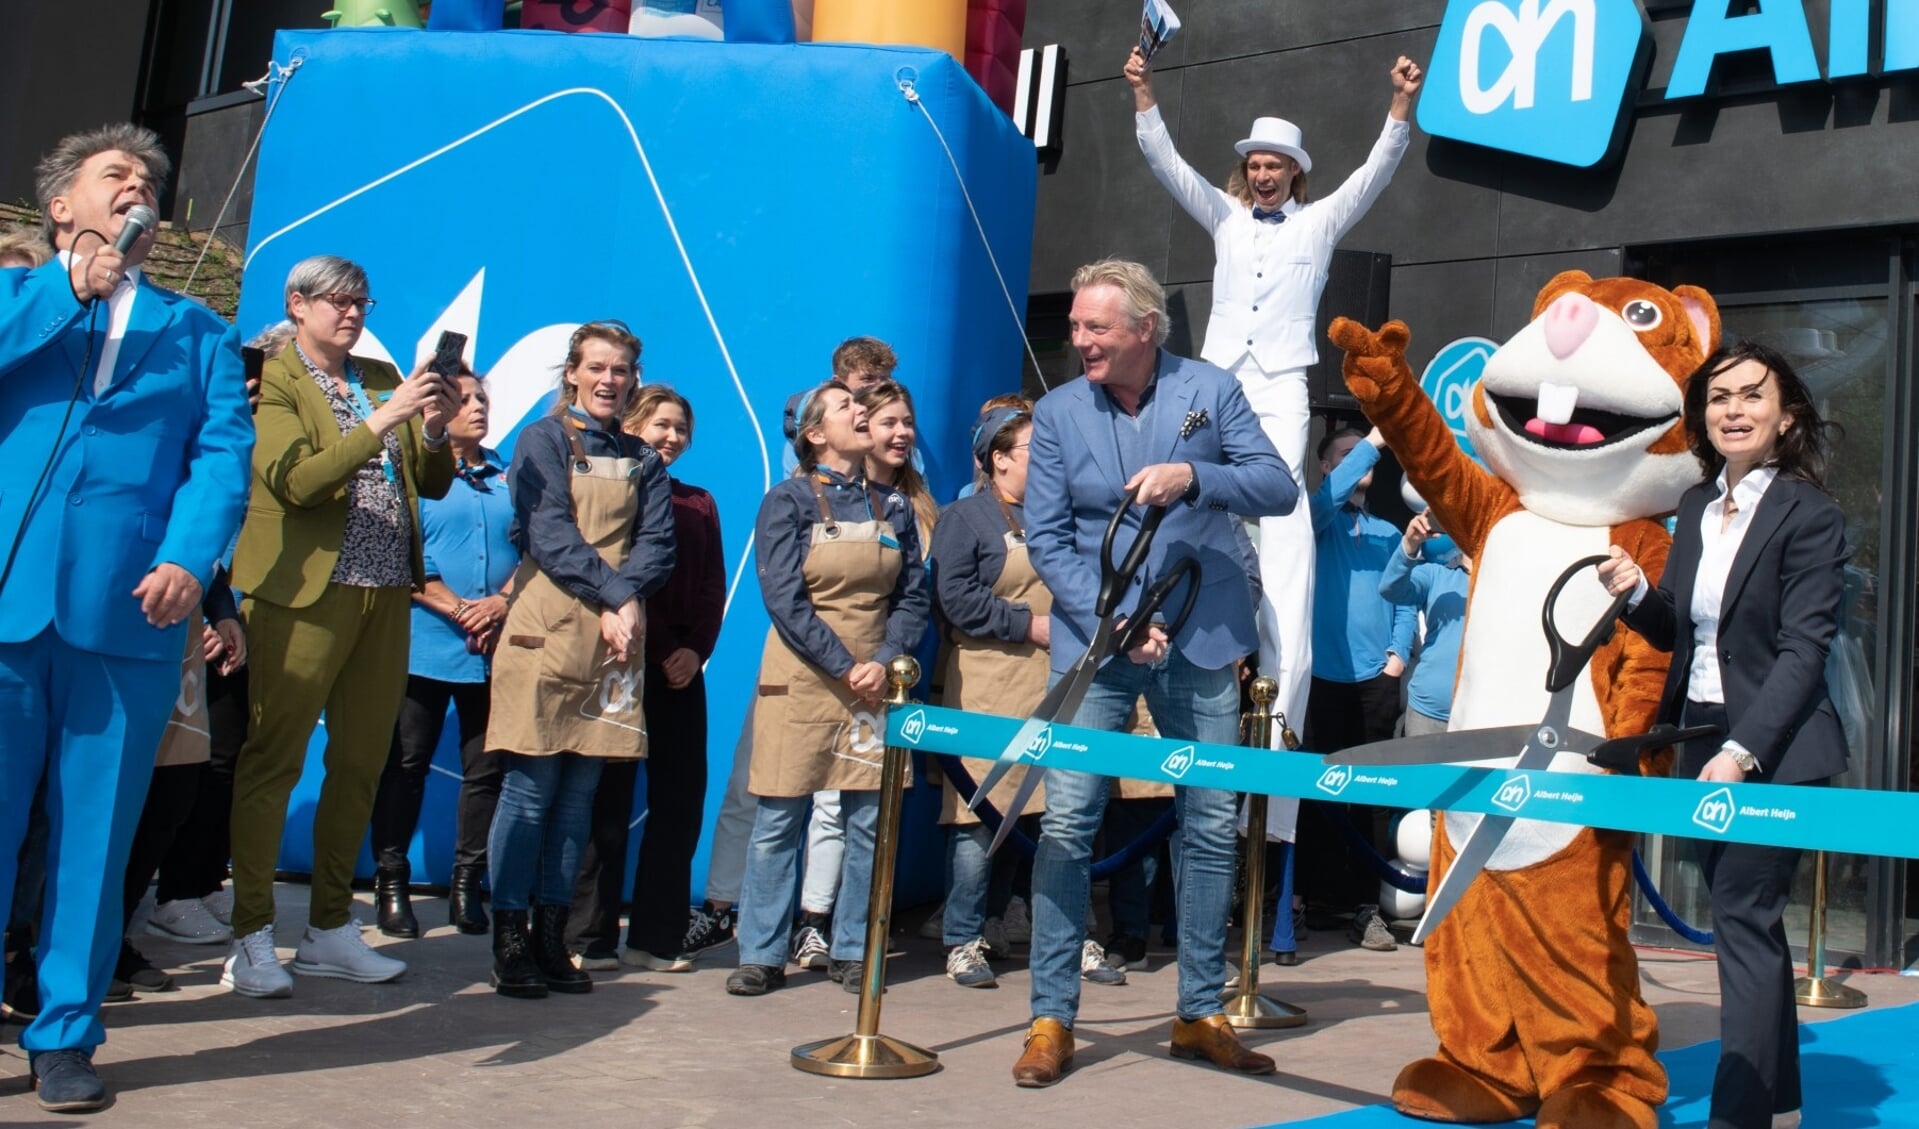 De feestelijke opening van Albert Heijn Velperweg. Wethouder Jan van Dellen knipt samen met supermarktmanager Yeliz Ates het lint door.